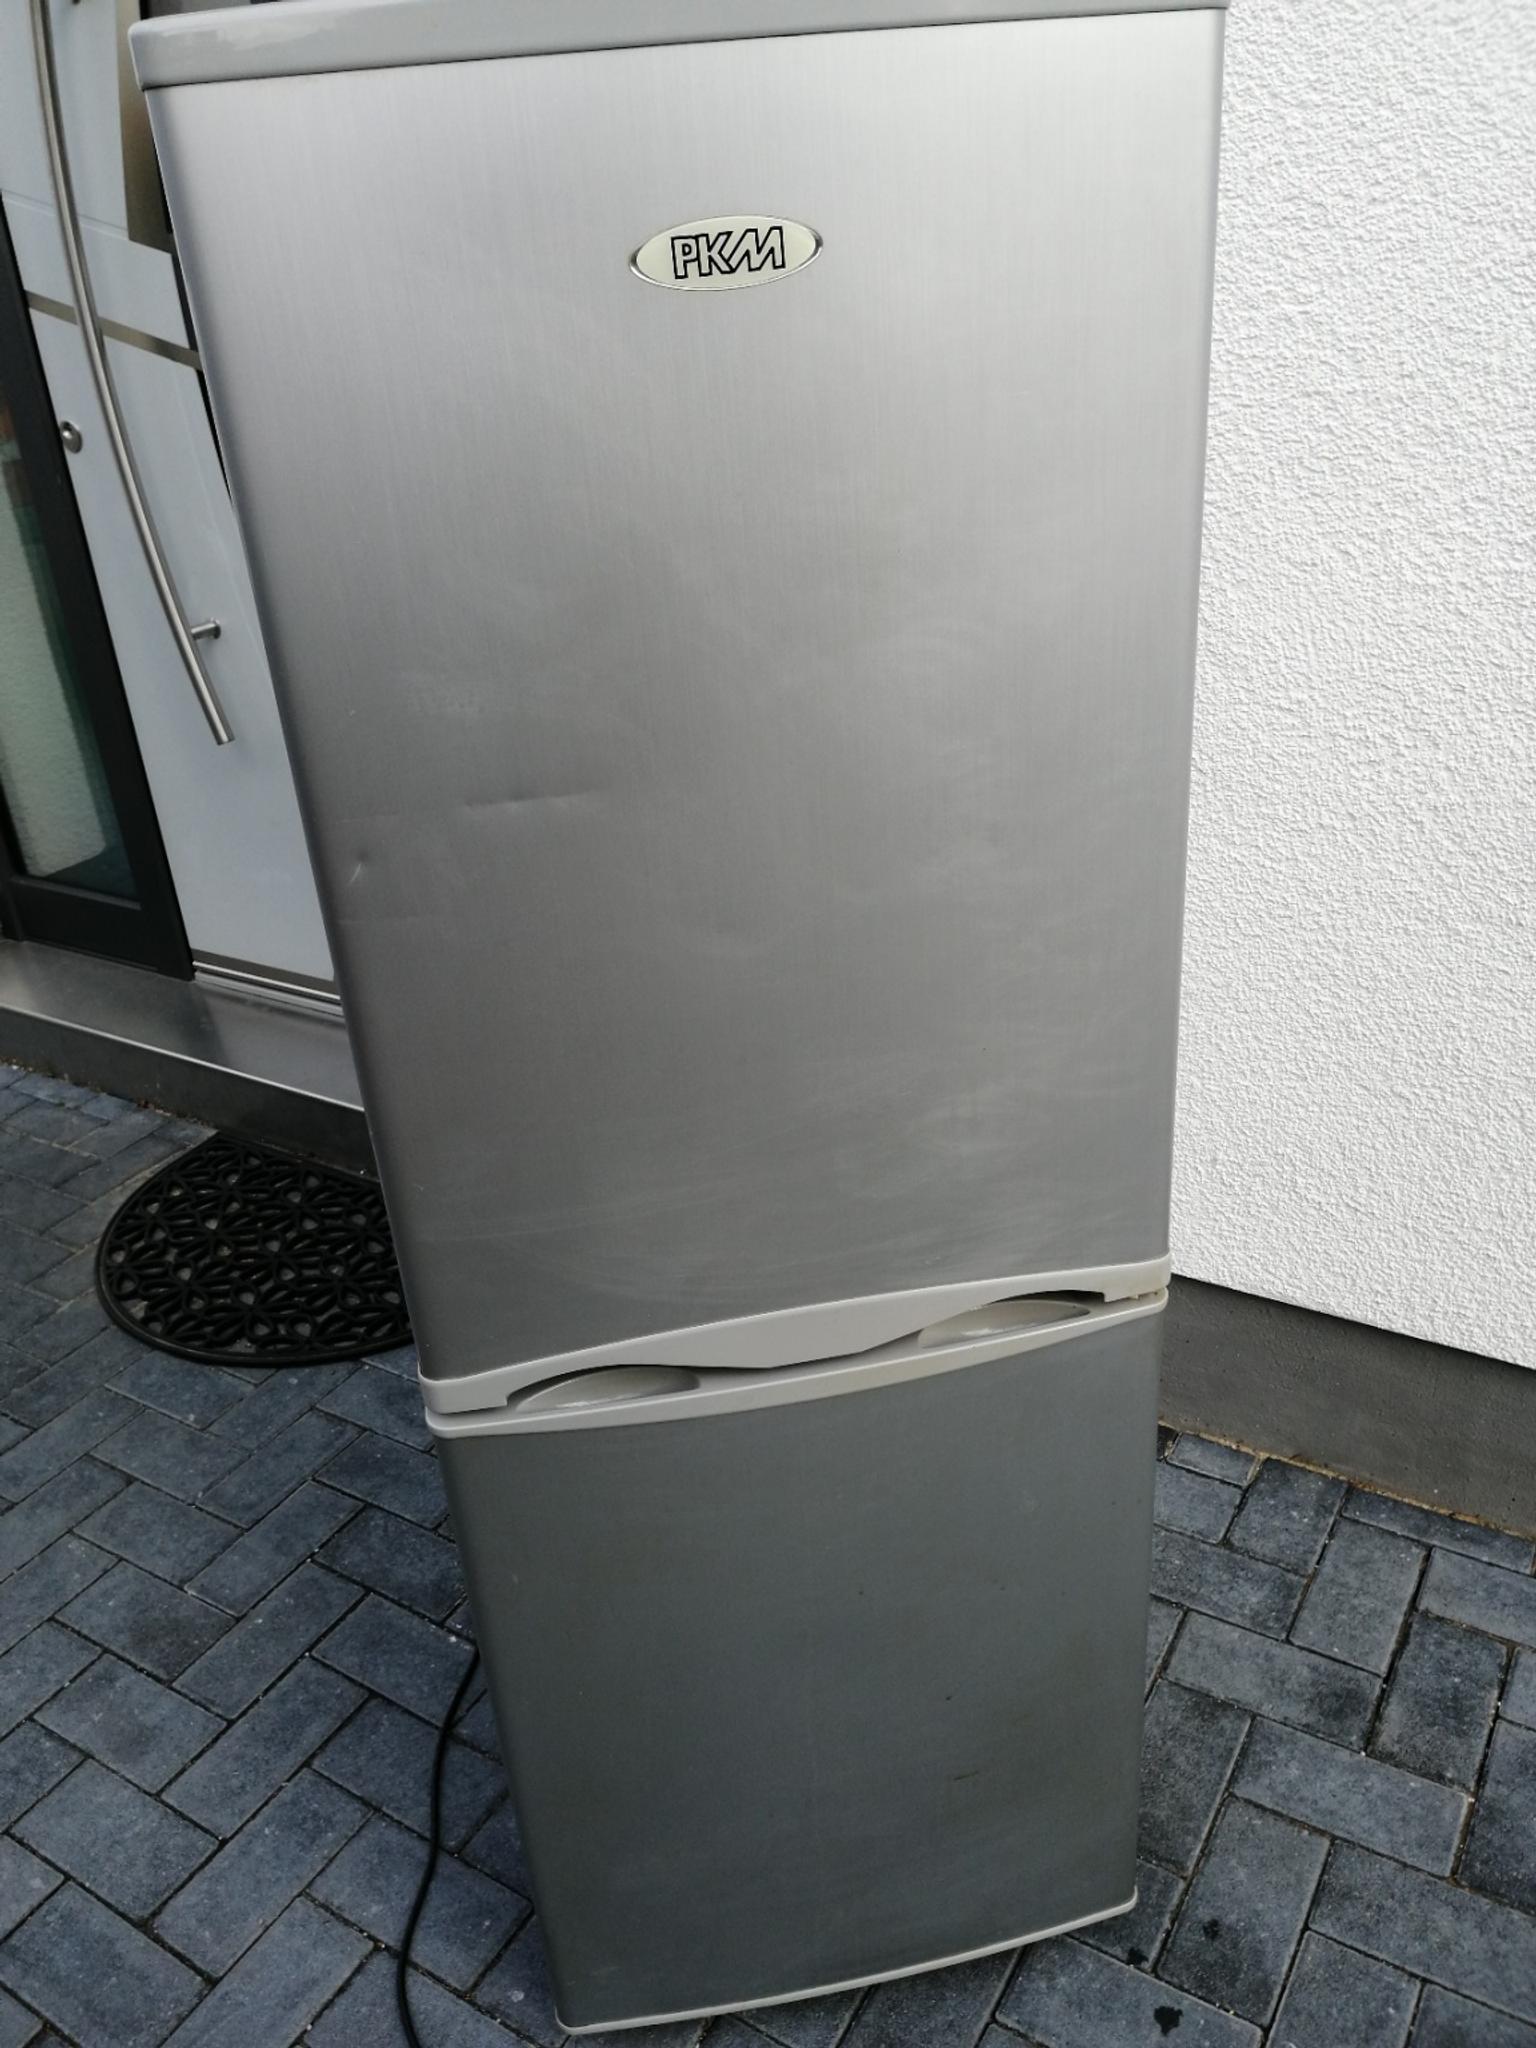 Kühlschrank der Marke pkm in 68642 Bürstadt für 35,00 ...